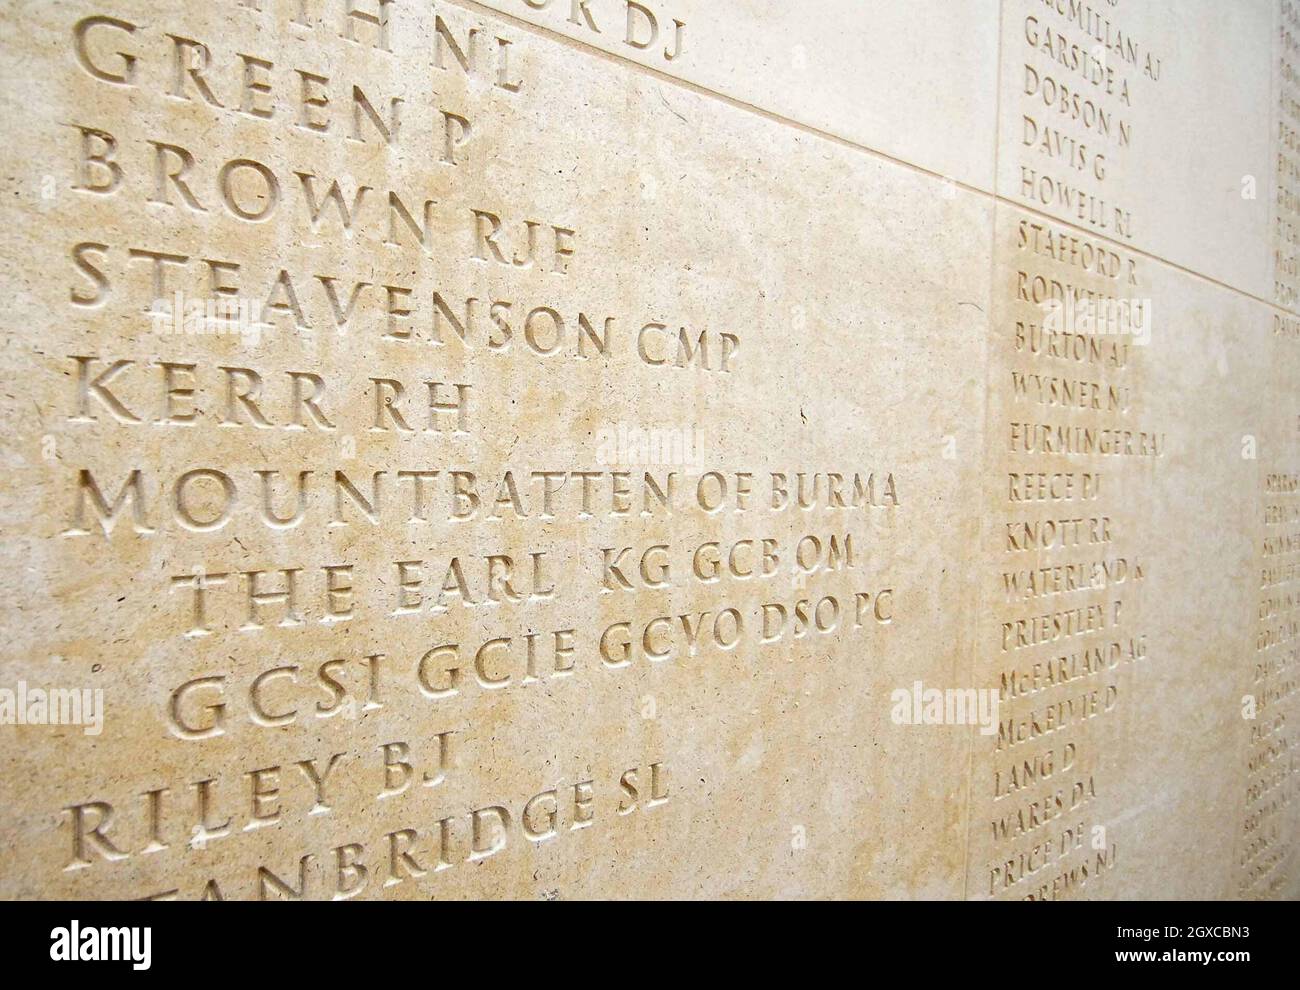 Lord Mountbatten heißt im neuen National Armed Forces Memorial in Alrewas in Staffordshire. Fast 16,000 Namen sind an den riesigen Portland Stone Walls eingemeißelt, die all jenen Tribut zollen, die ihr Leben seit 1948 im Dienst ihres Landes gestellt haben. Stockfoto